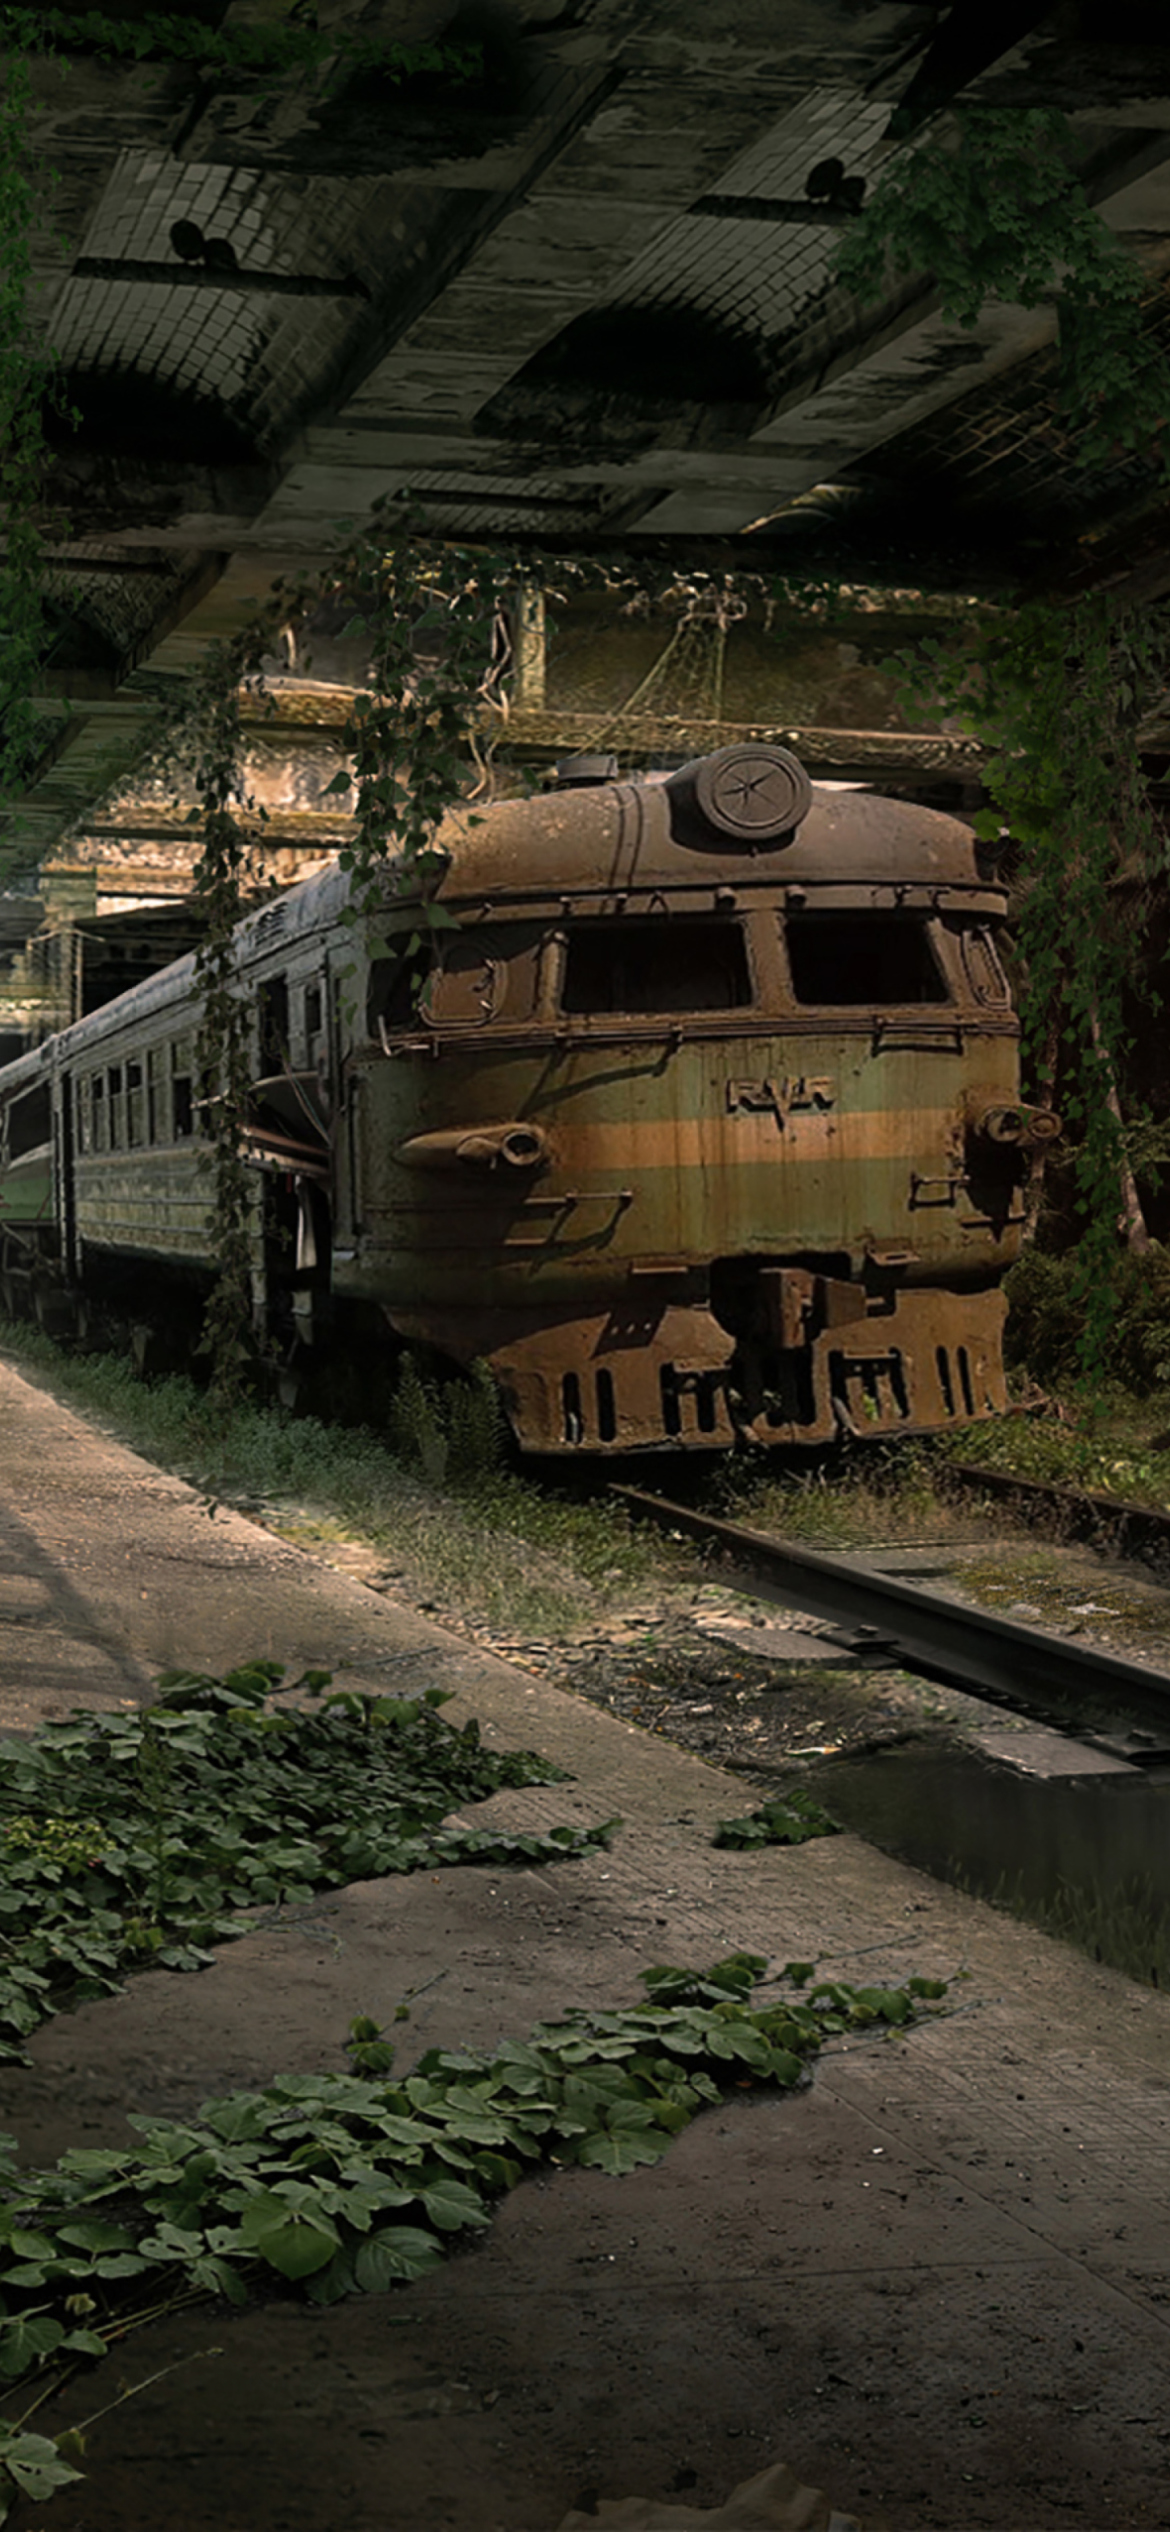 Обои Abandoned Train 1170x2532